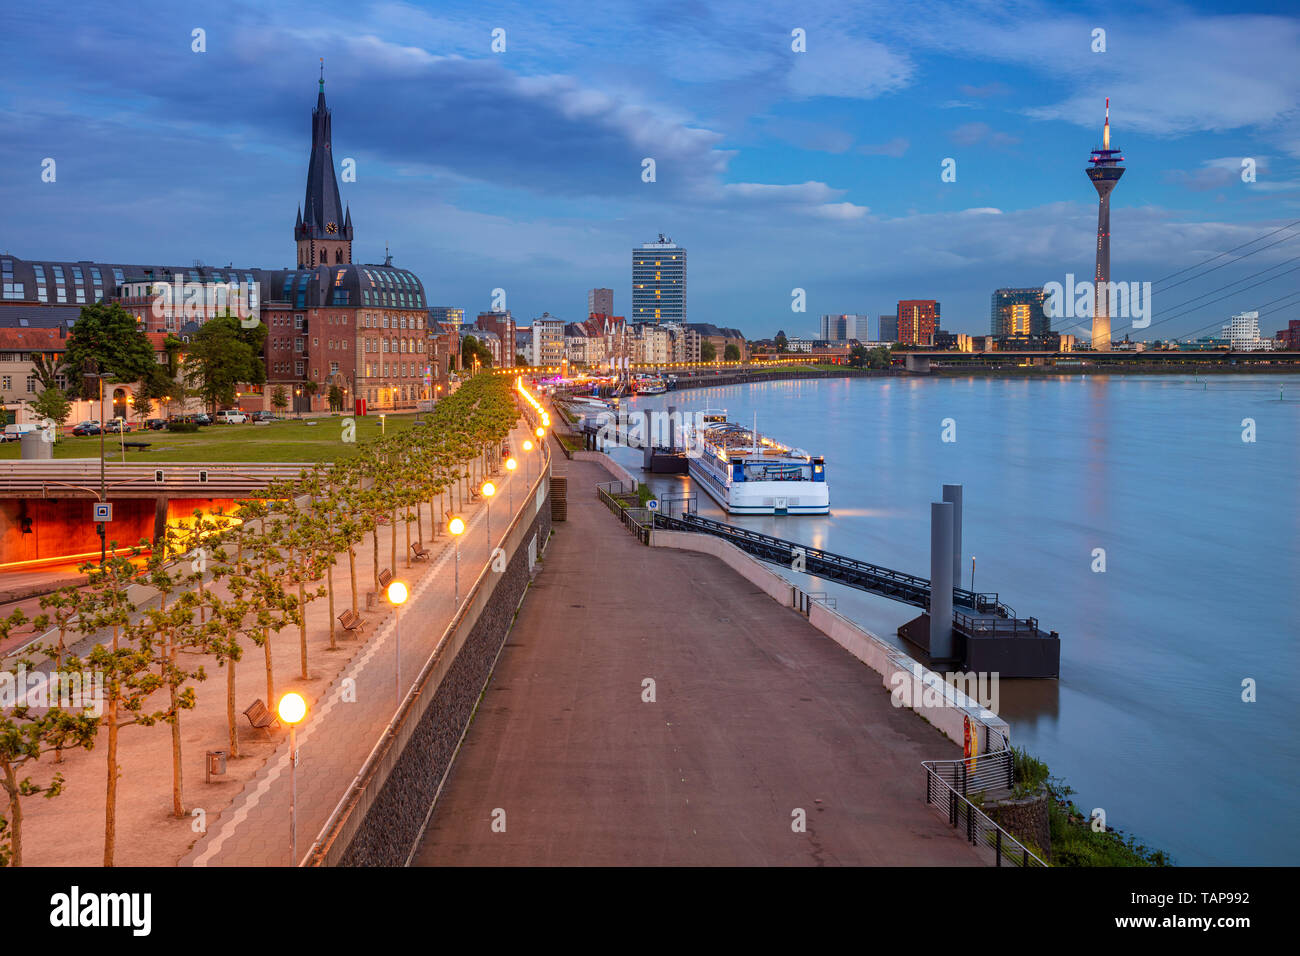 Dusseldorf, Germania. Immagine del paesaggio urbano del fiume Düsseldorf, Germania con il fiume Reno al tramonto. Foto Stock